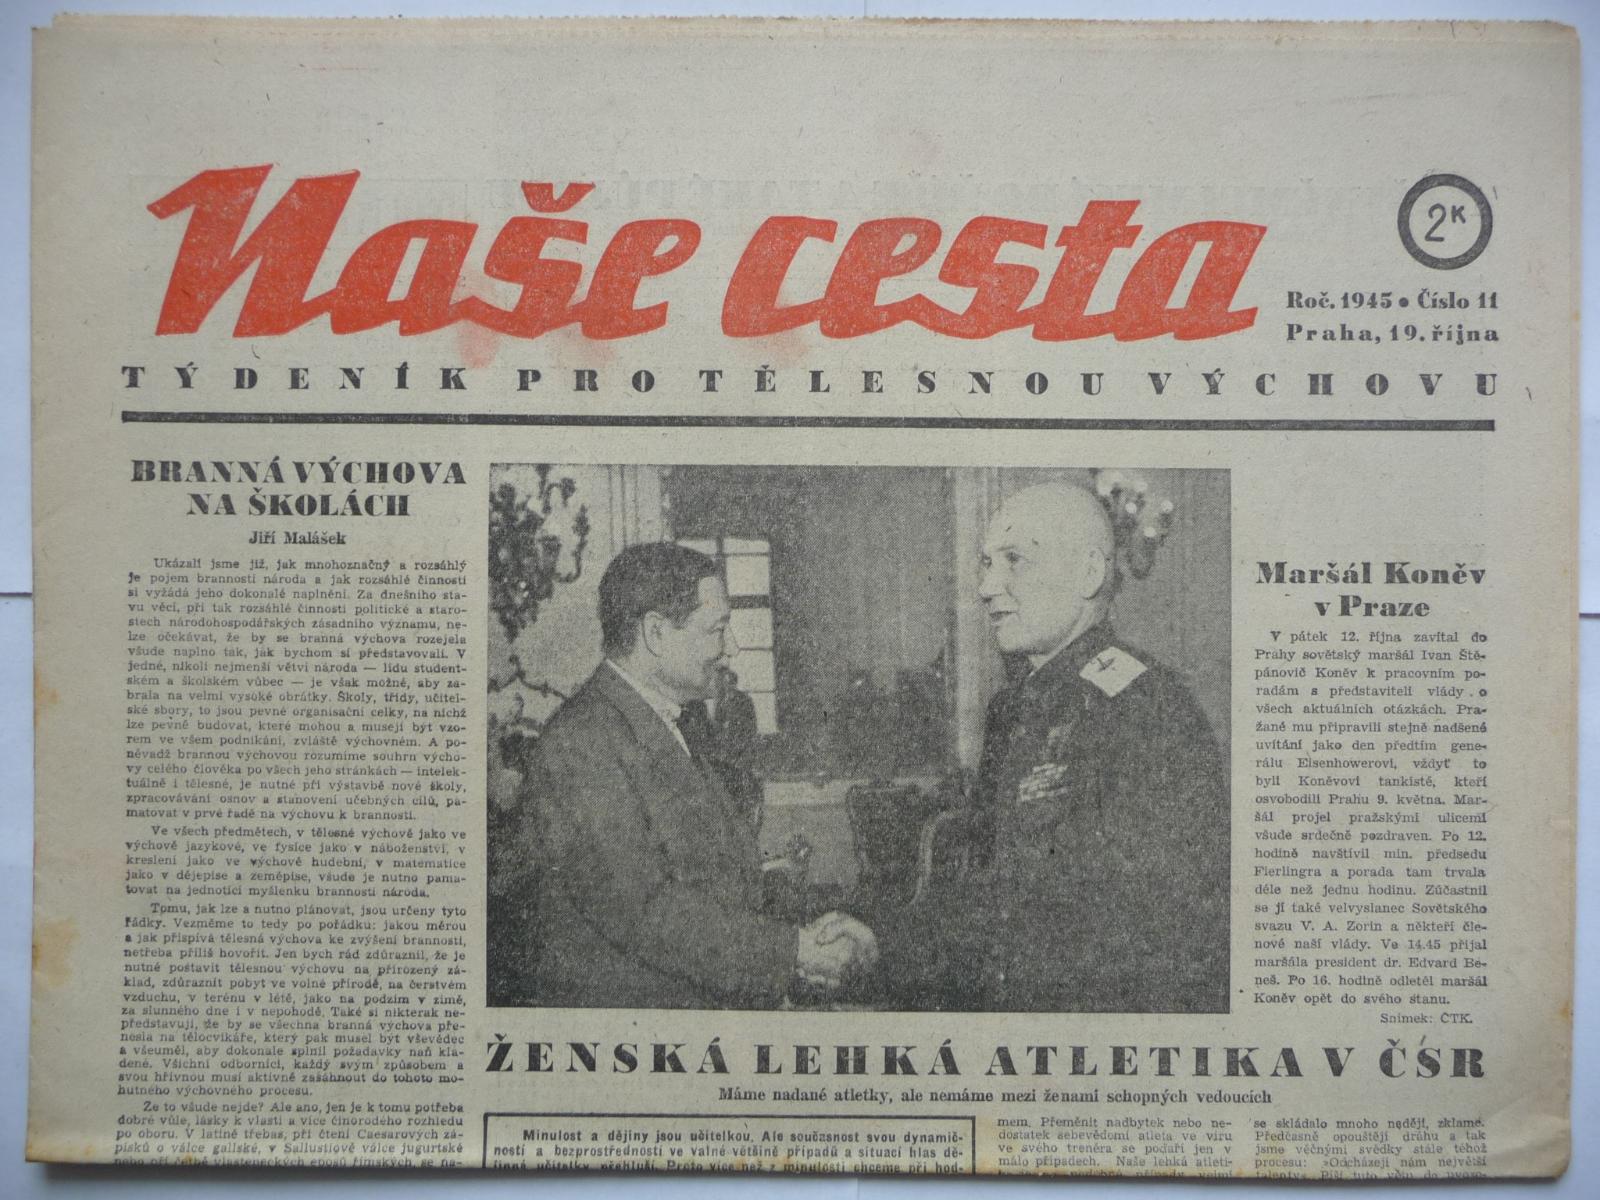 Staré noviny - Naša cesta - číslo 11. z 19. októbra roku 1945 - Knihy a časopisy